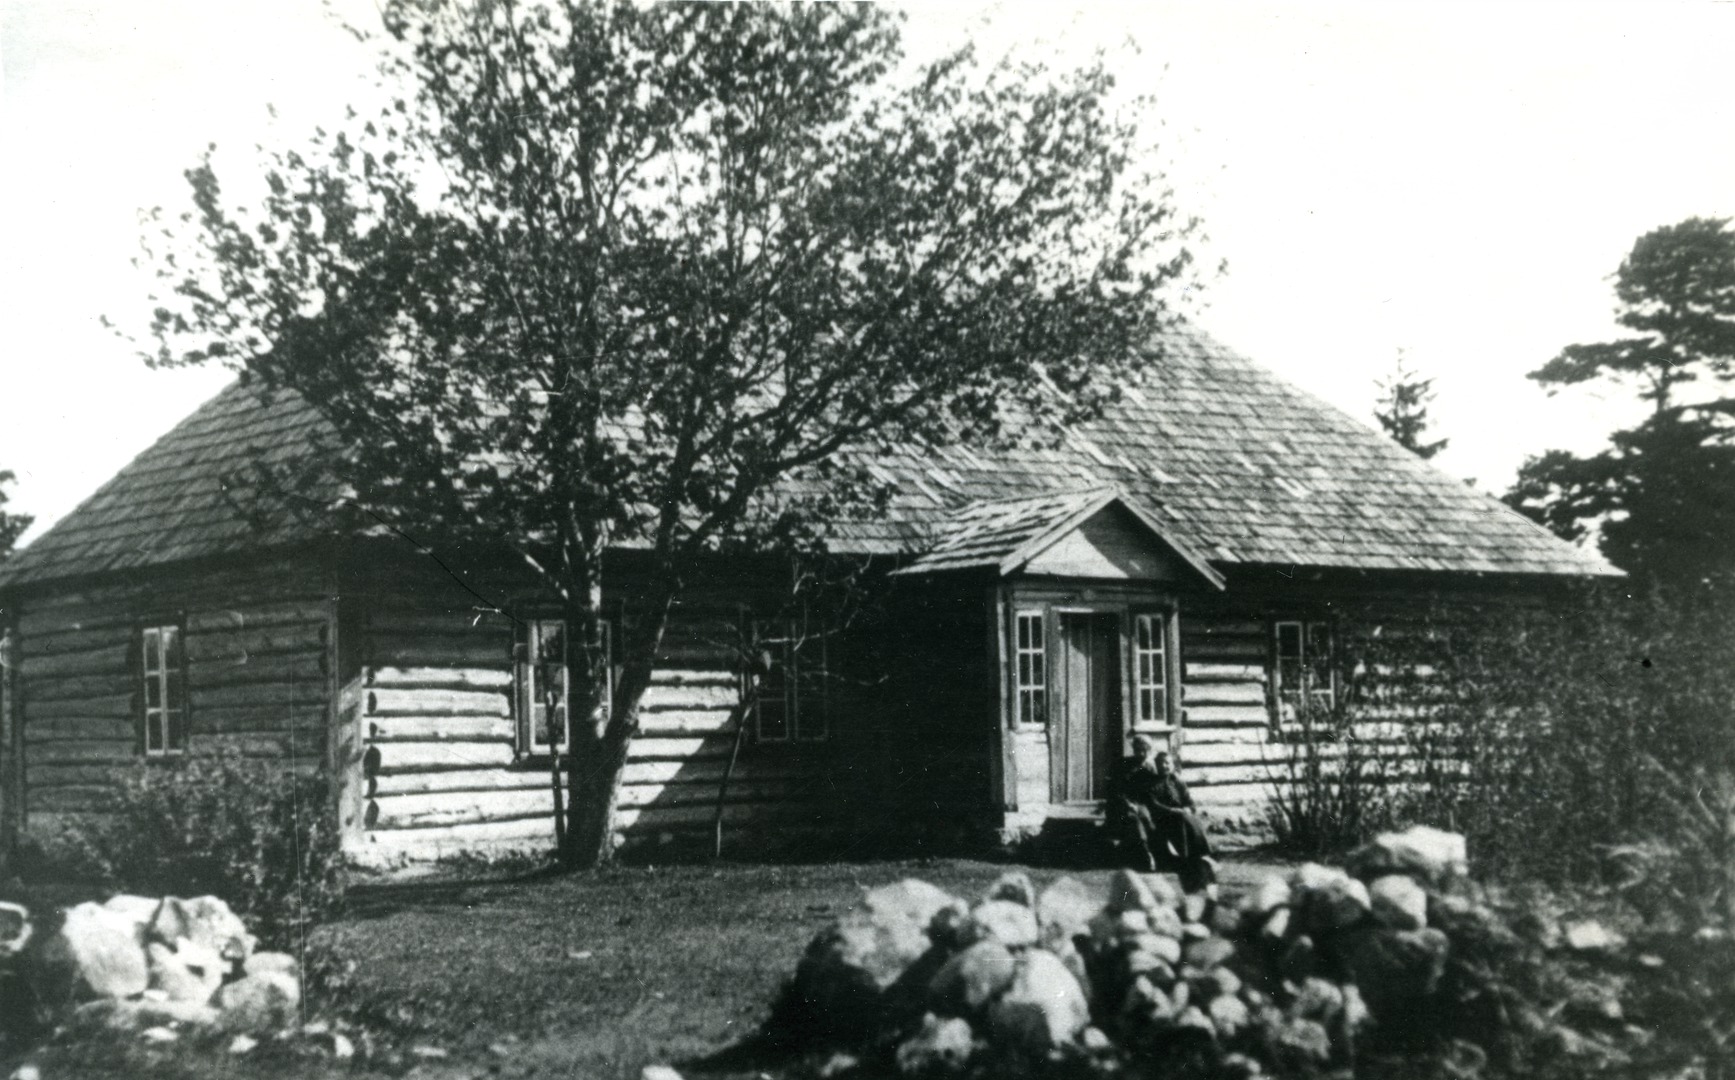 Triigi School House in Saaremaa